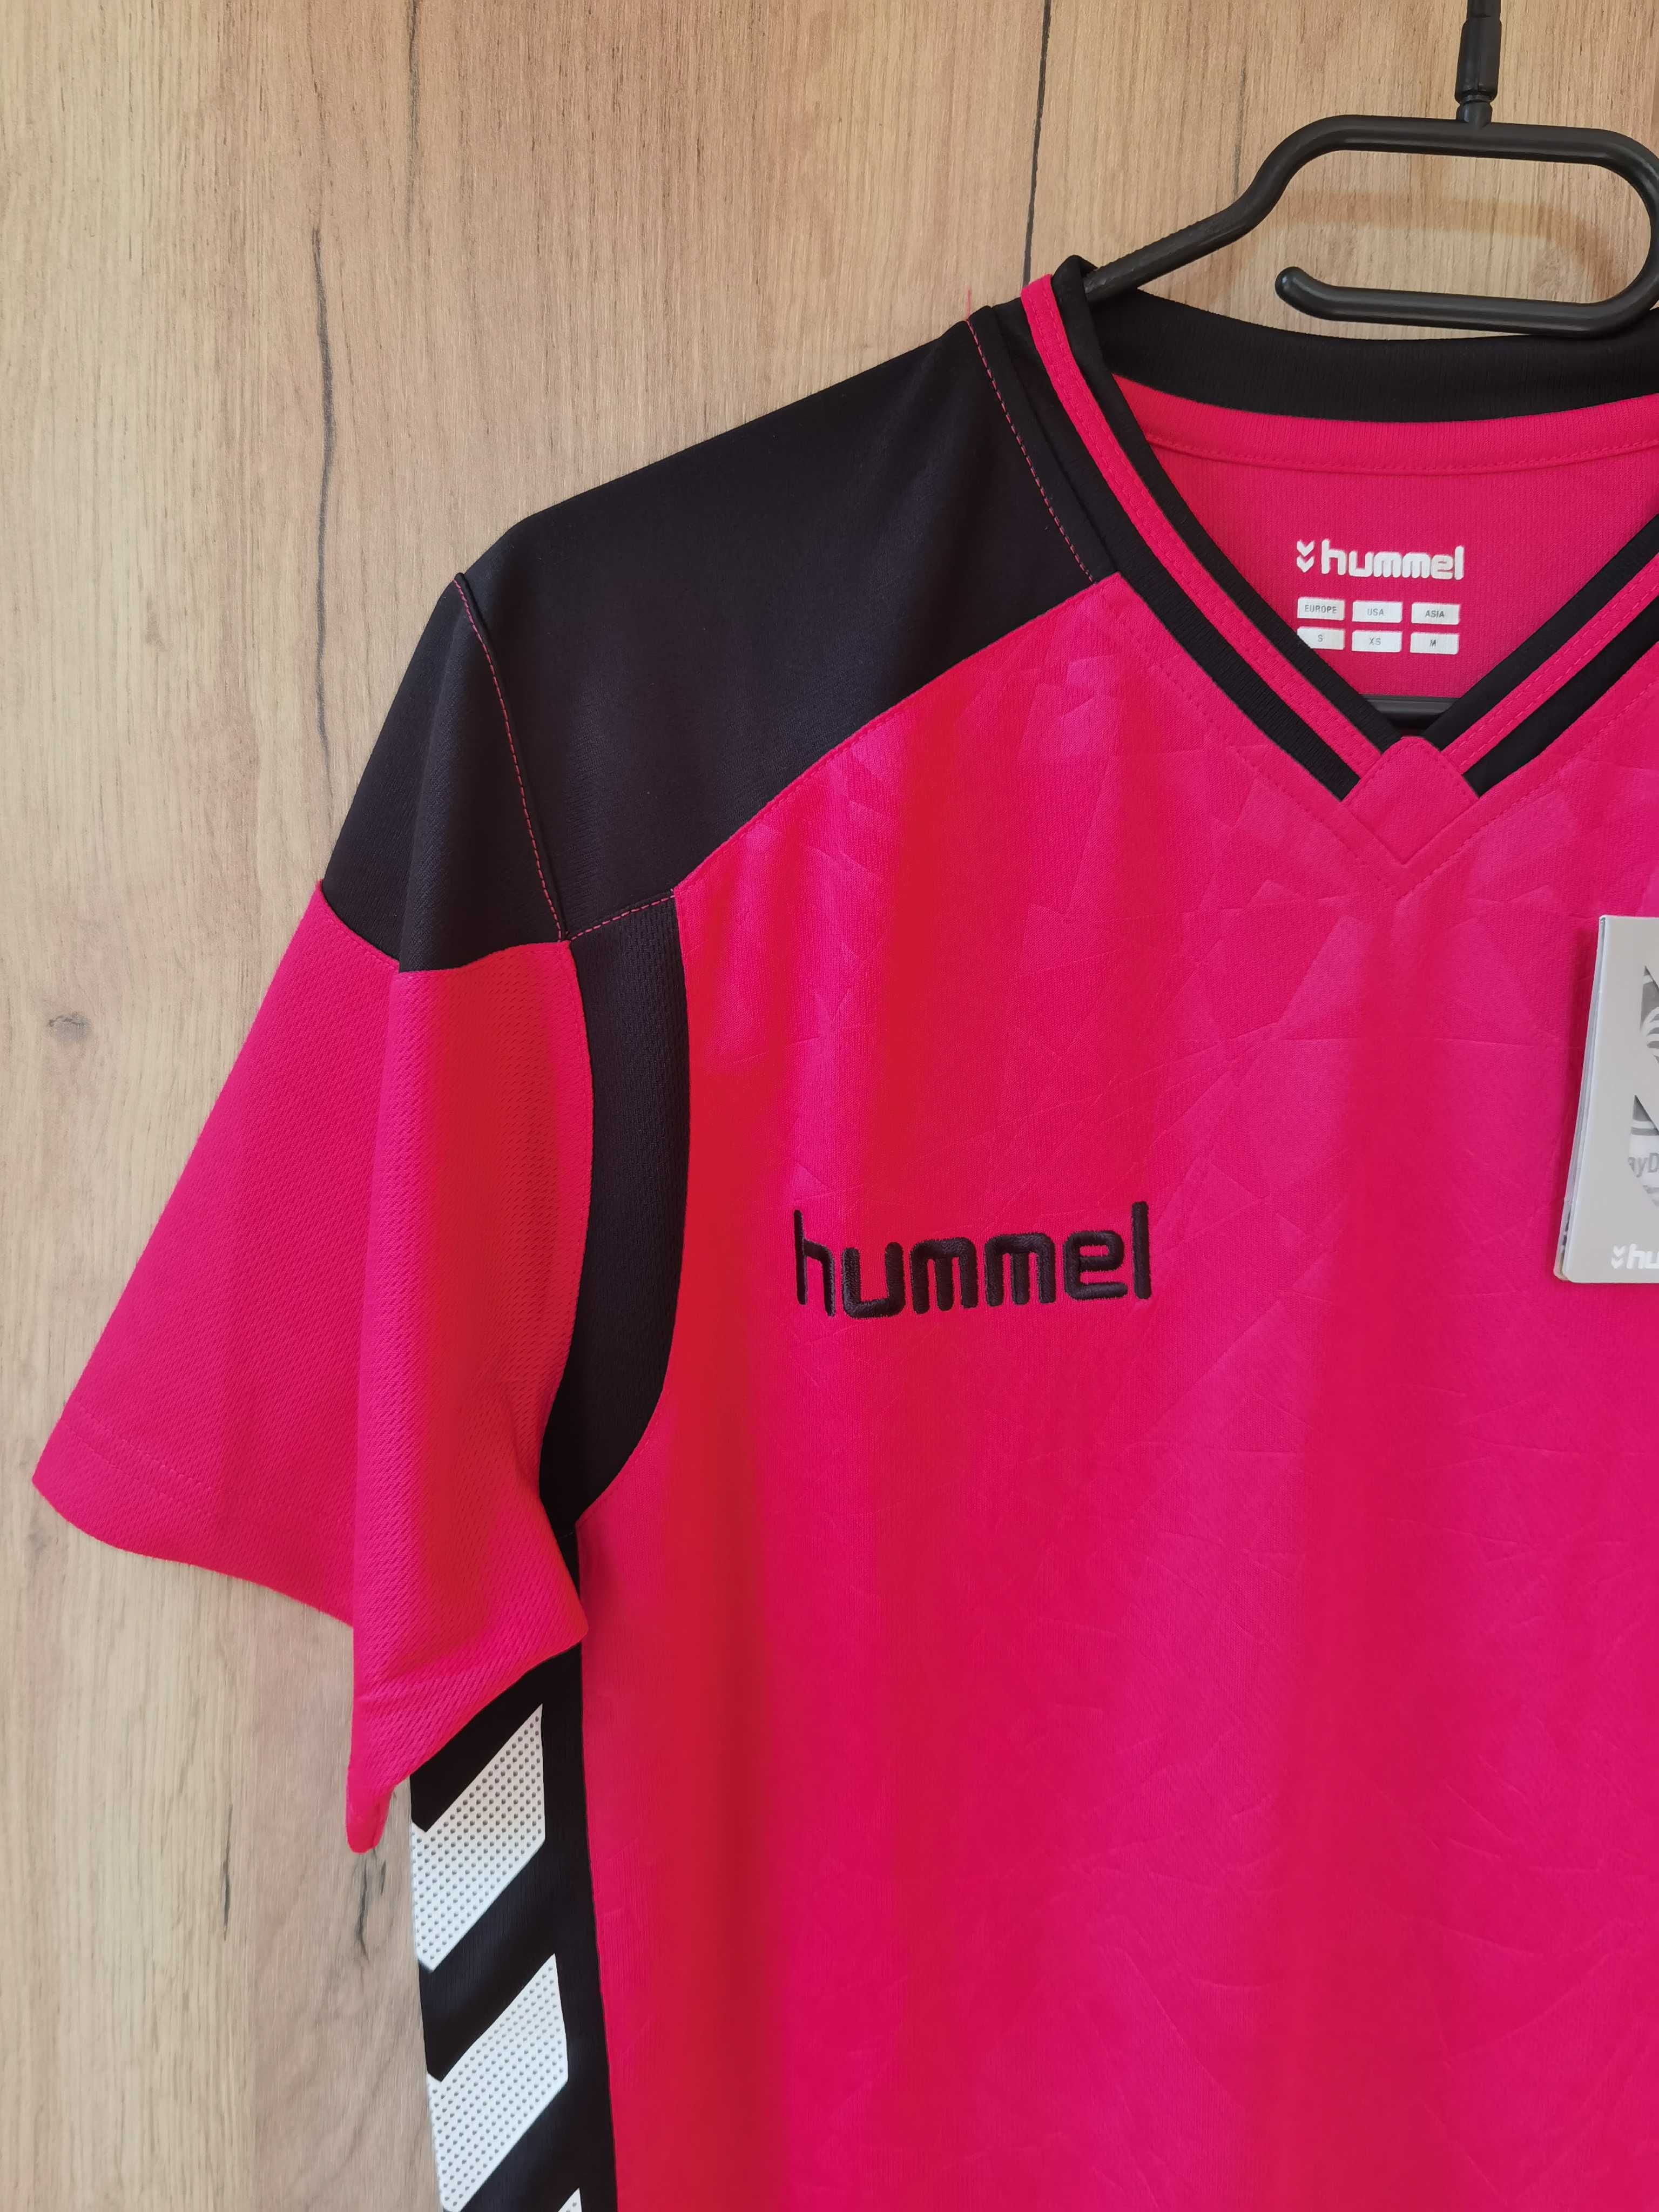 Koszulka sportowa Hummel, rozmiar S, nowa z metką. Wymiary na płasko: